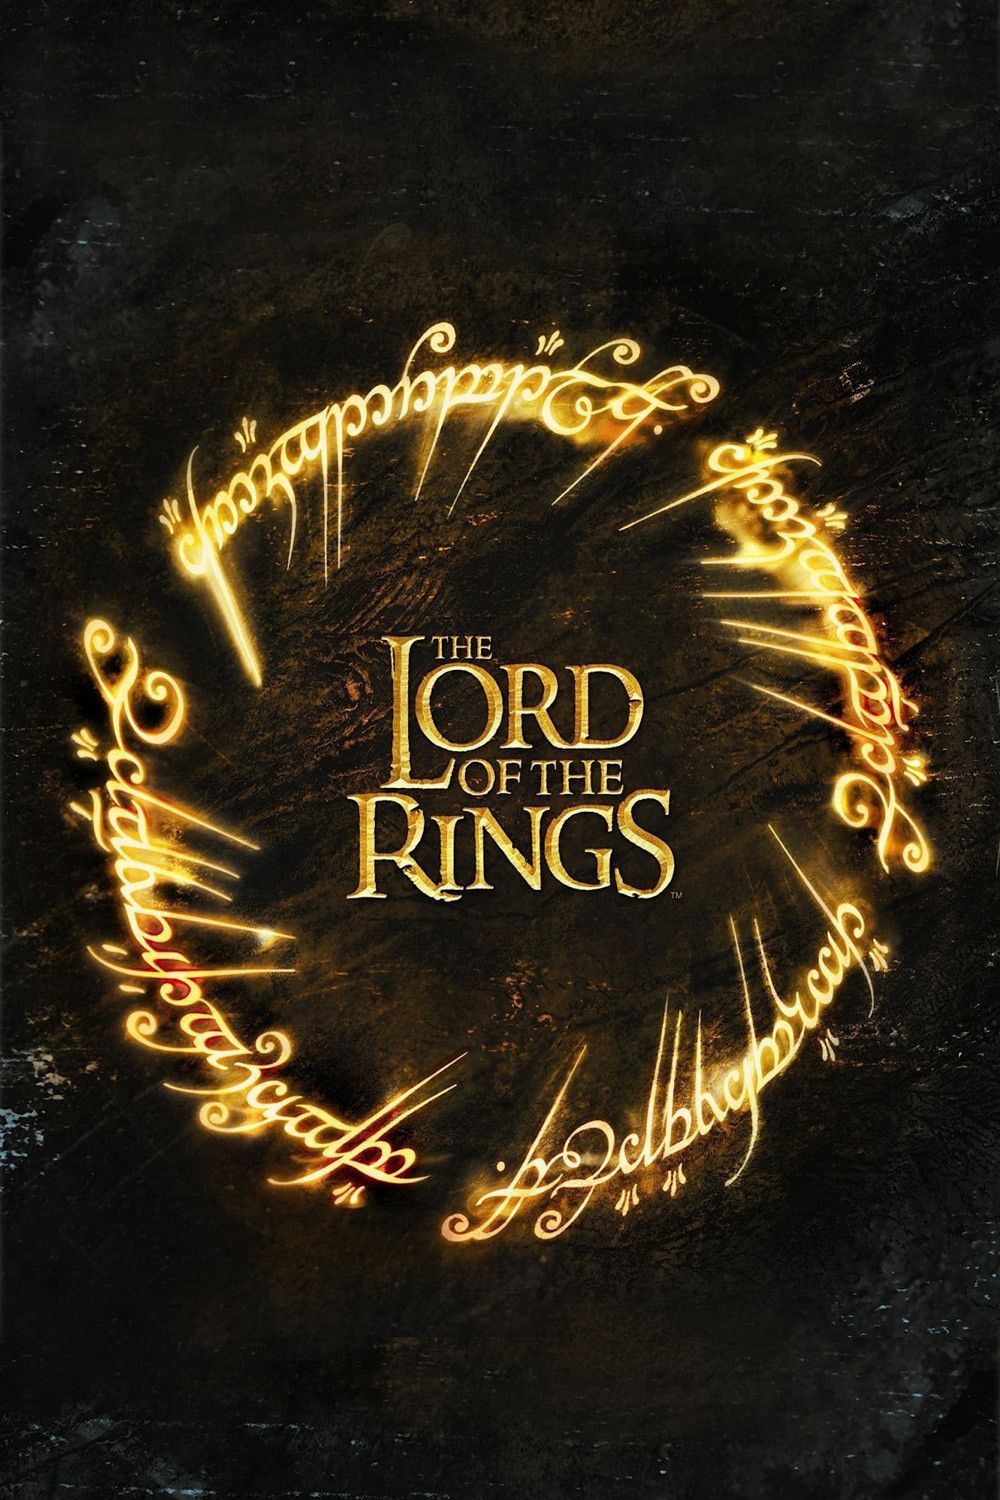 Poster Waralaba Lord of the Rings dengan Kata-kata Emas yang Menyerupai Cincin